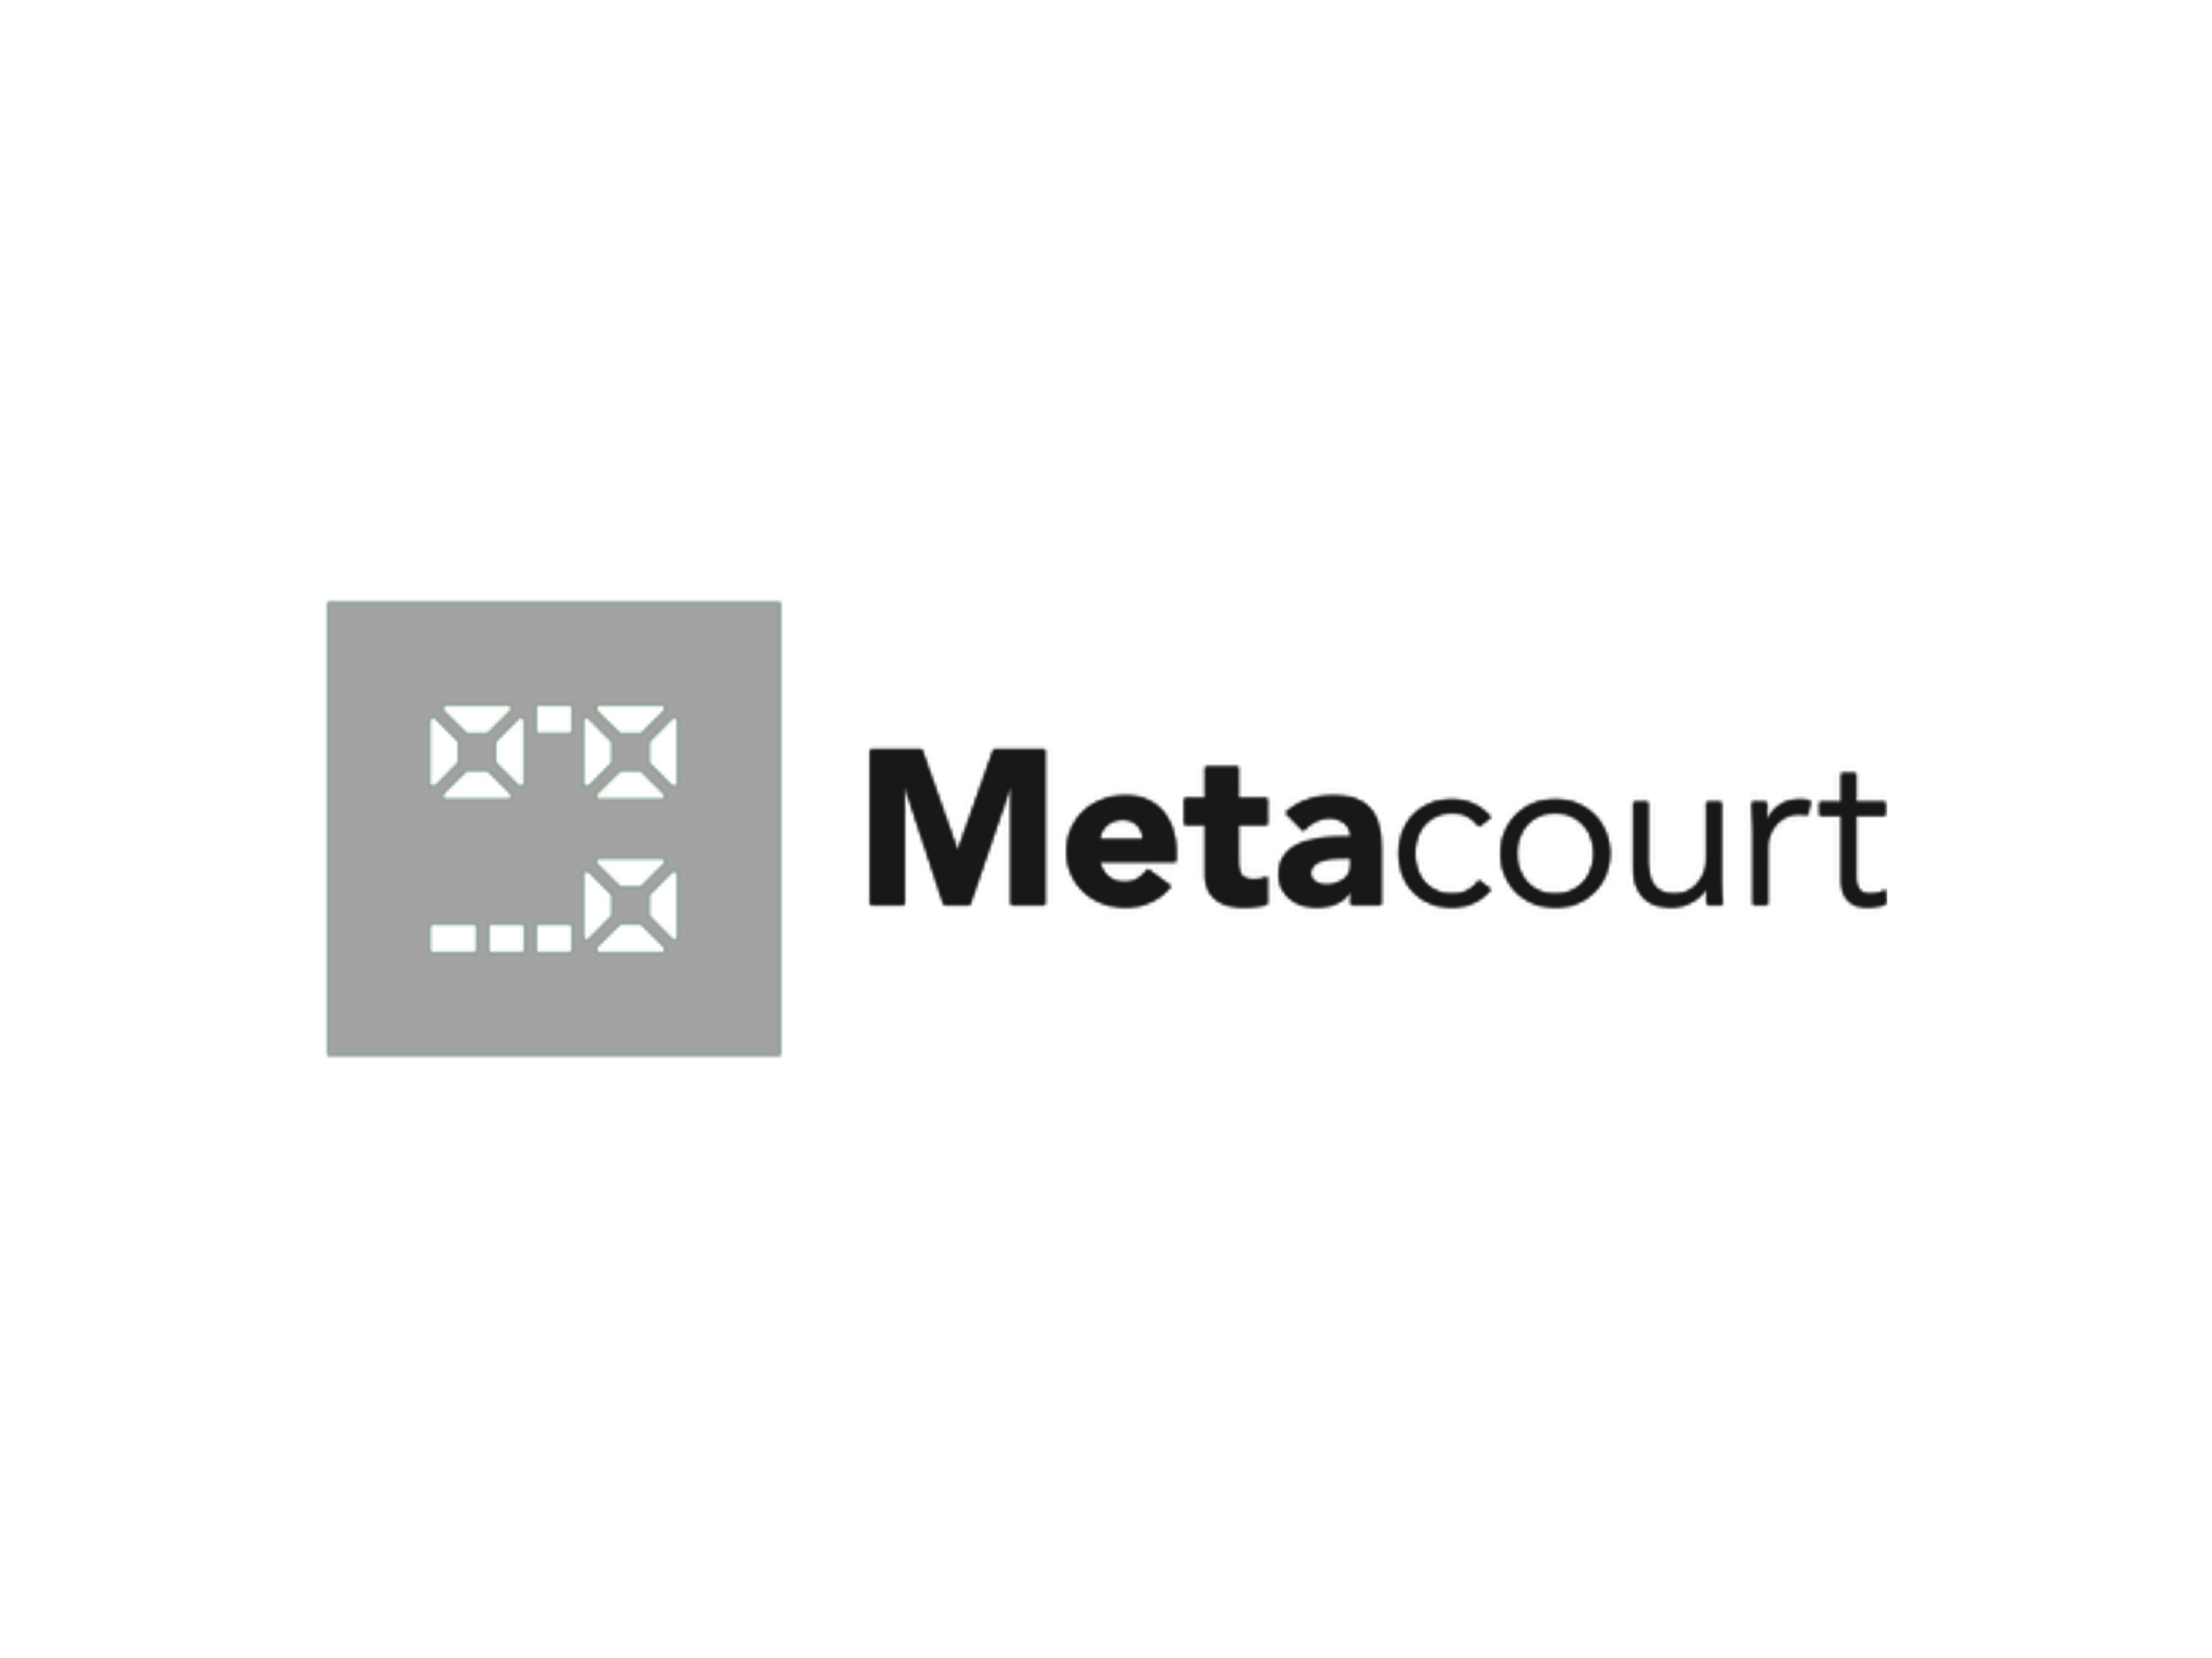 Metacourt